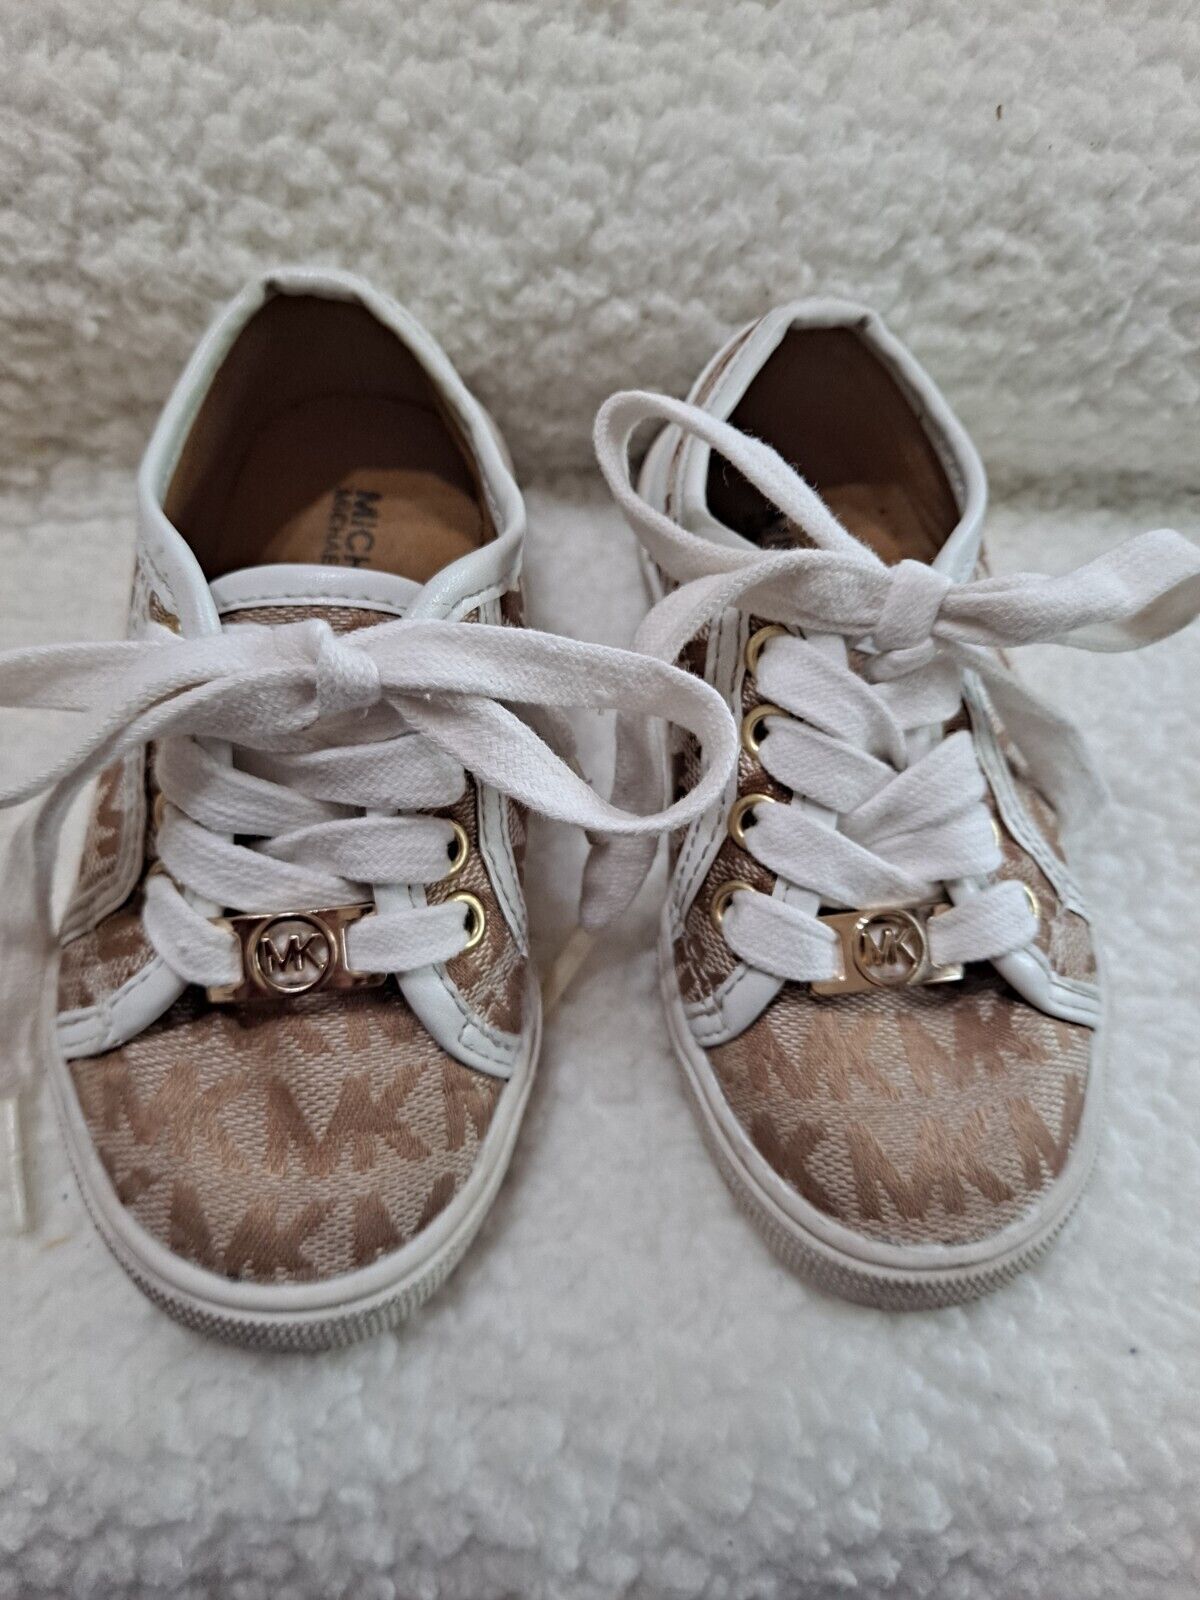 Michael Kors Girl's Signature Mk Brown/tan  Tennis Shoes Sneakers - Size 8